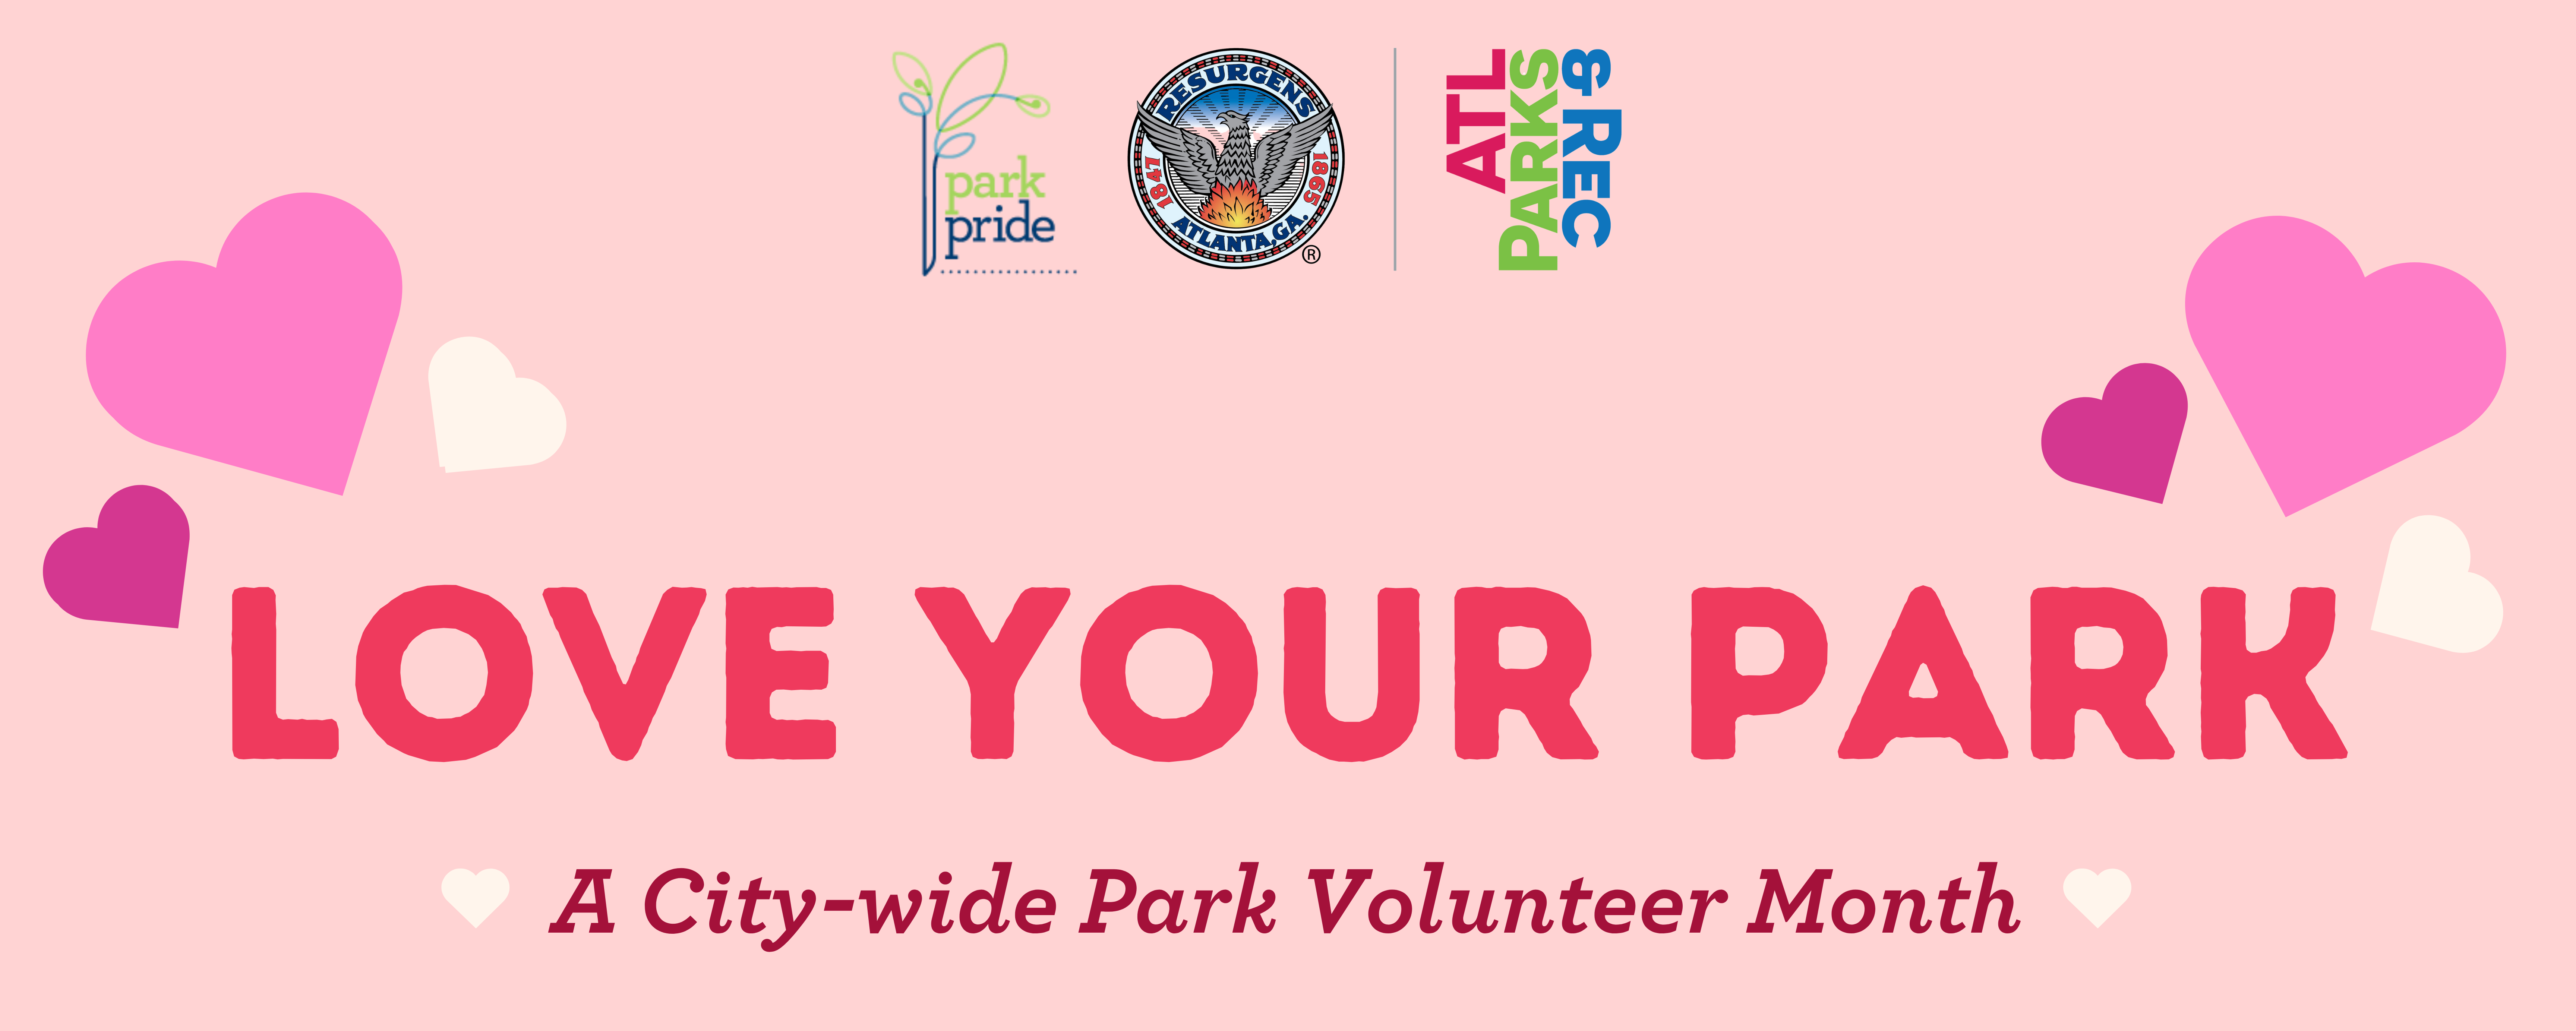 Love Your Park - Park Pride